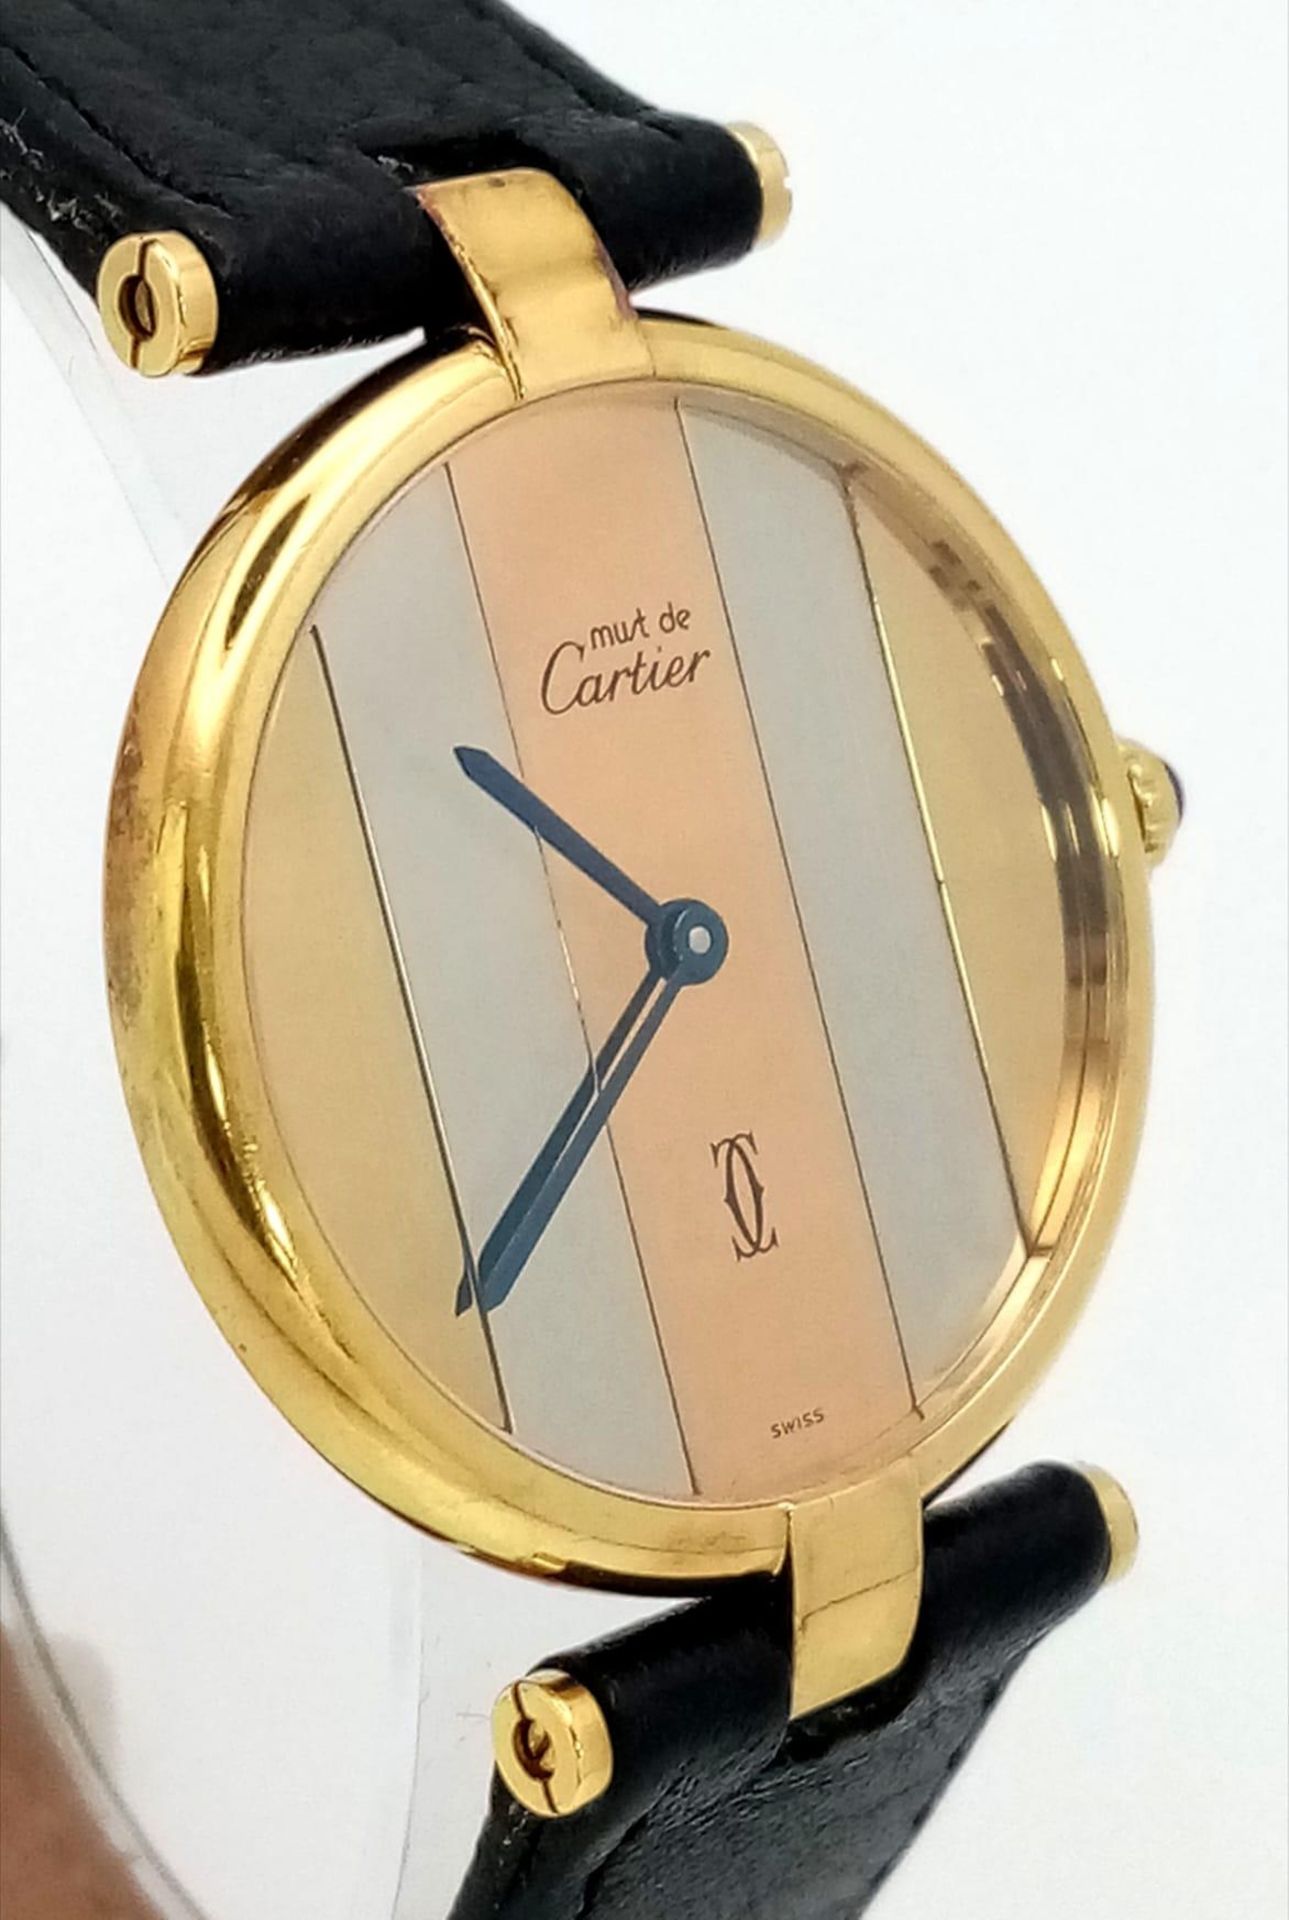 A Cartier Must De Vermeil Tri Colour Unisex Watch. Black leather strap. Vermeil case - 32mm, with - Image 3 of 10